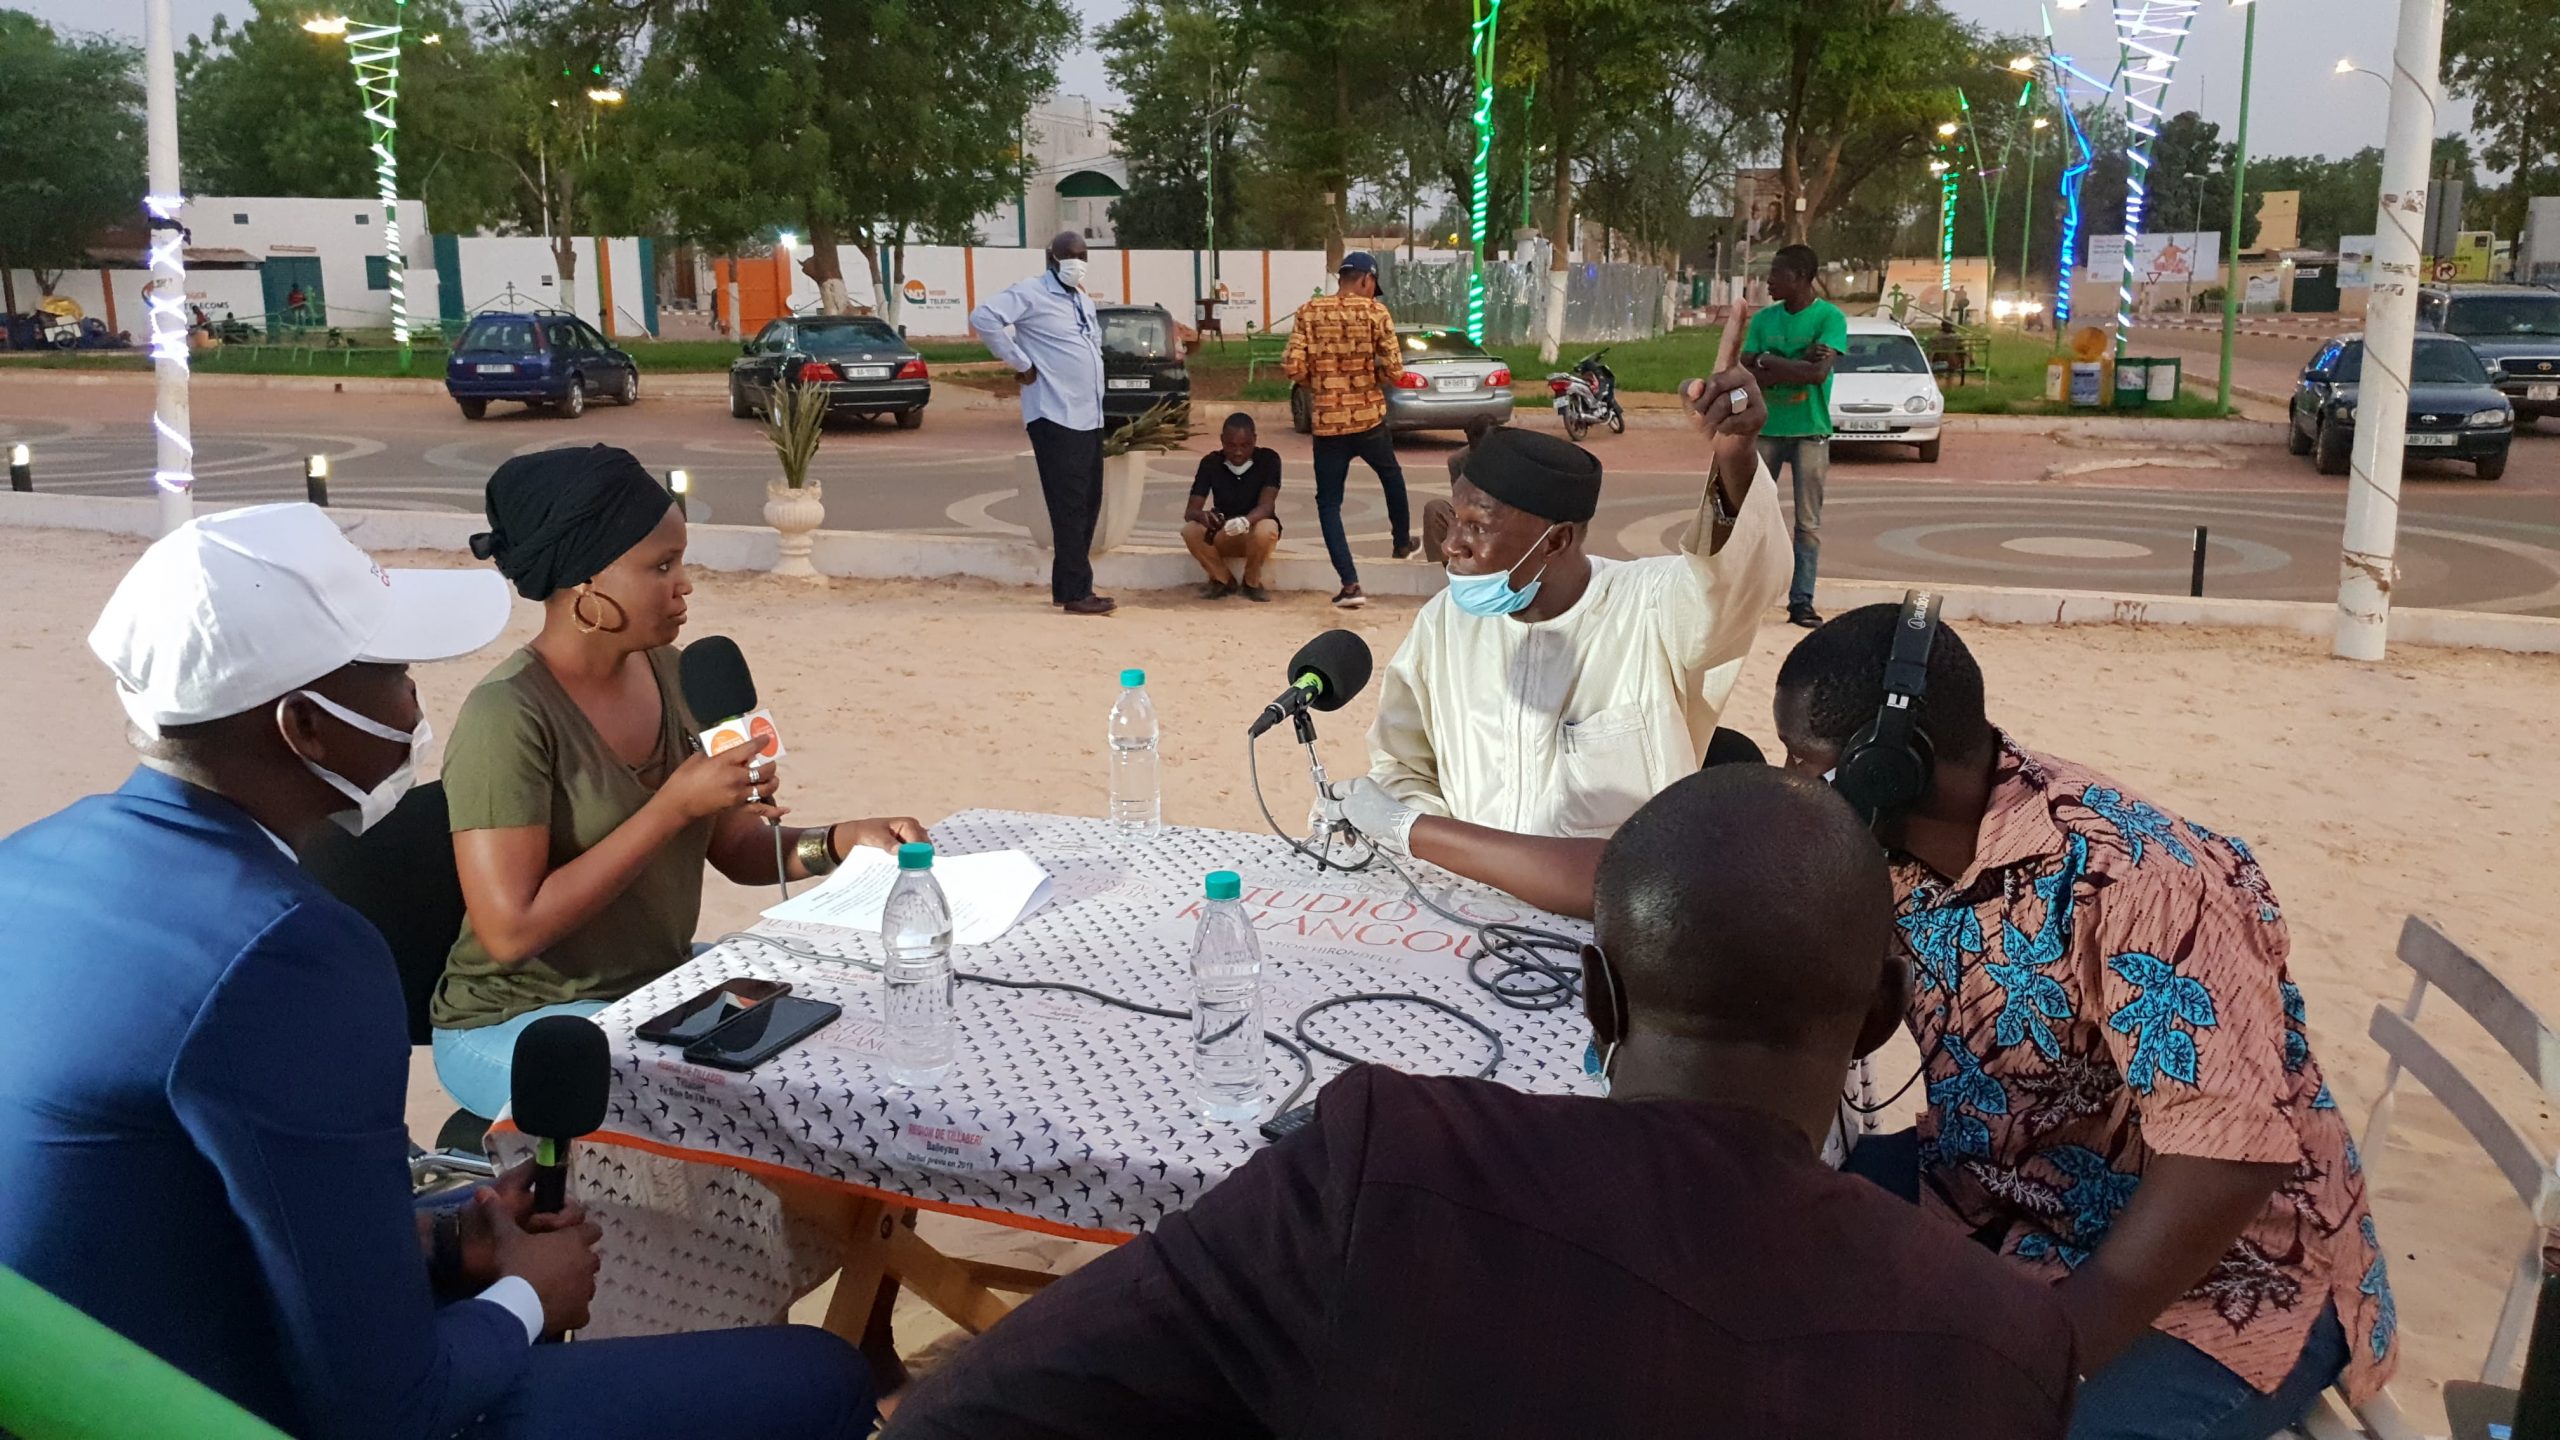 Covid19, les jeunes de Niamey face au couvre-feu : quelles attitudes adoptées ?